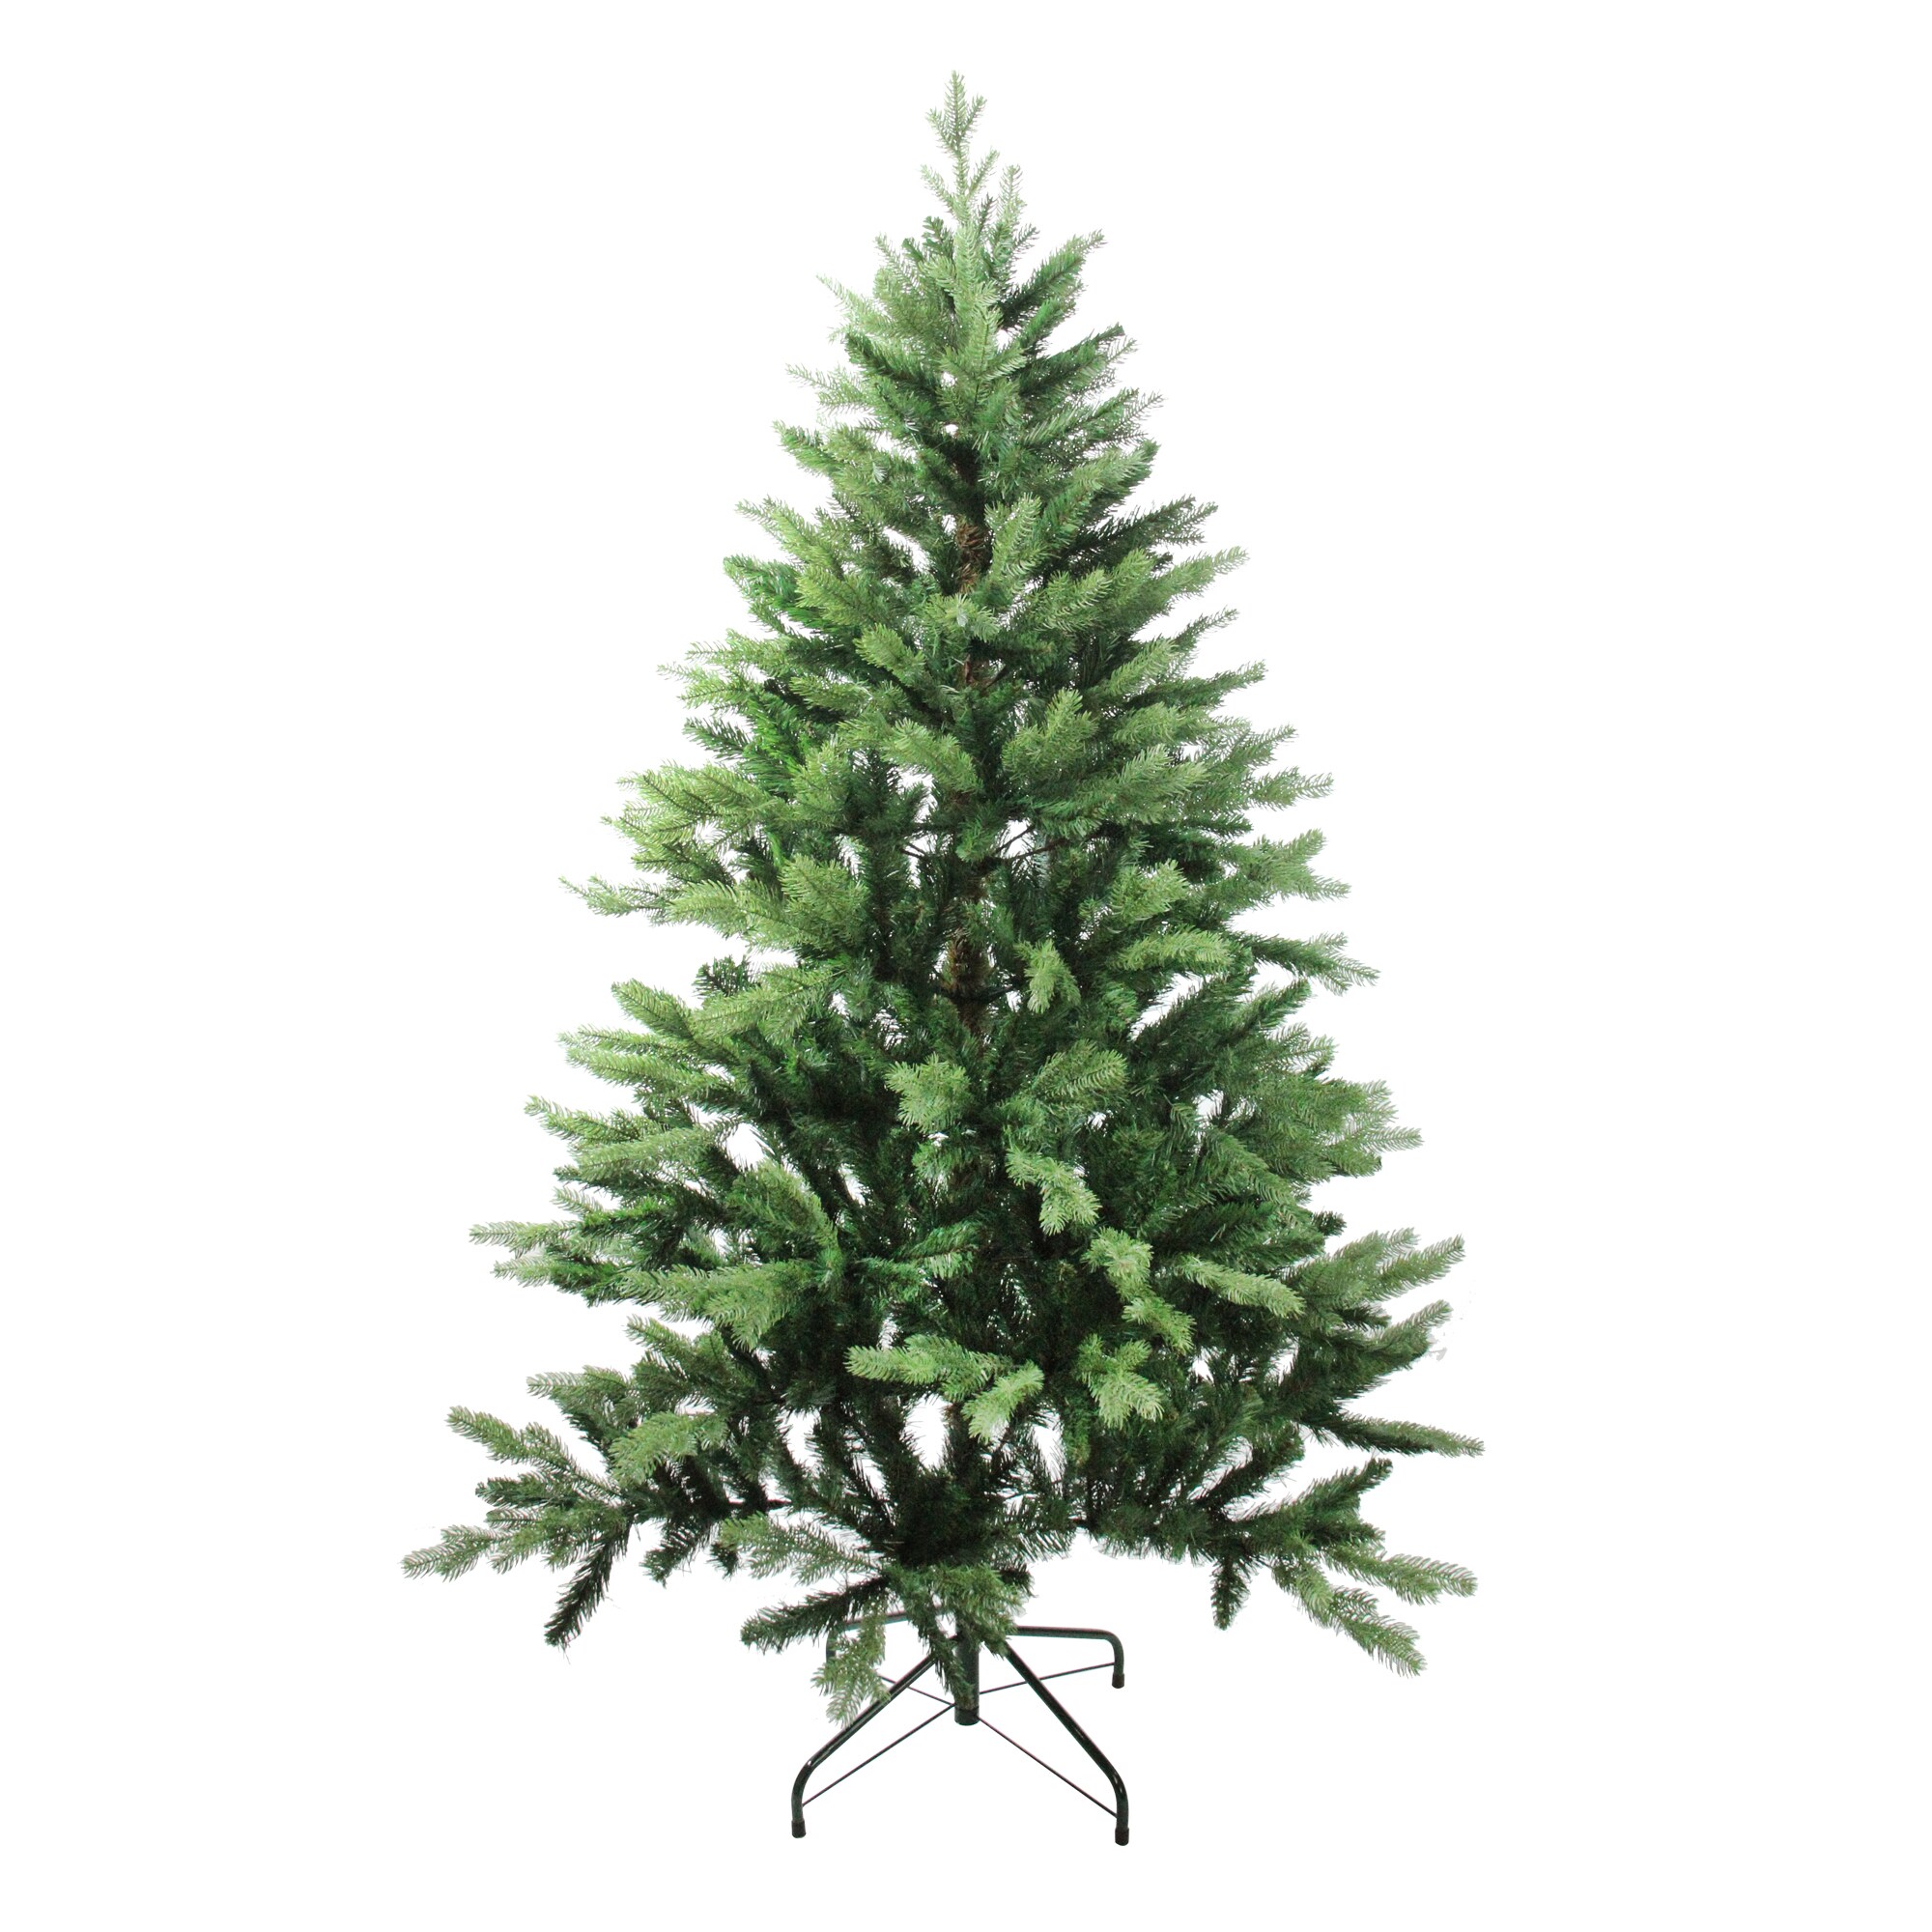 Northlight 4 ft. Unlit Silver Tinsel Medium Artificial Christmas Tree